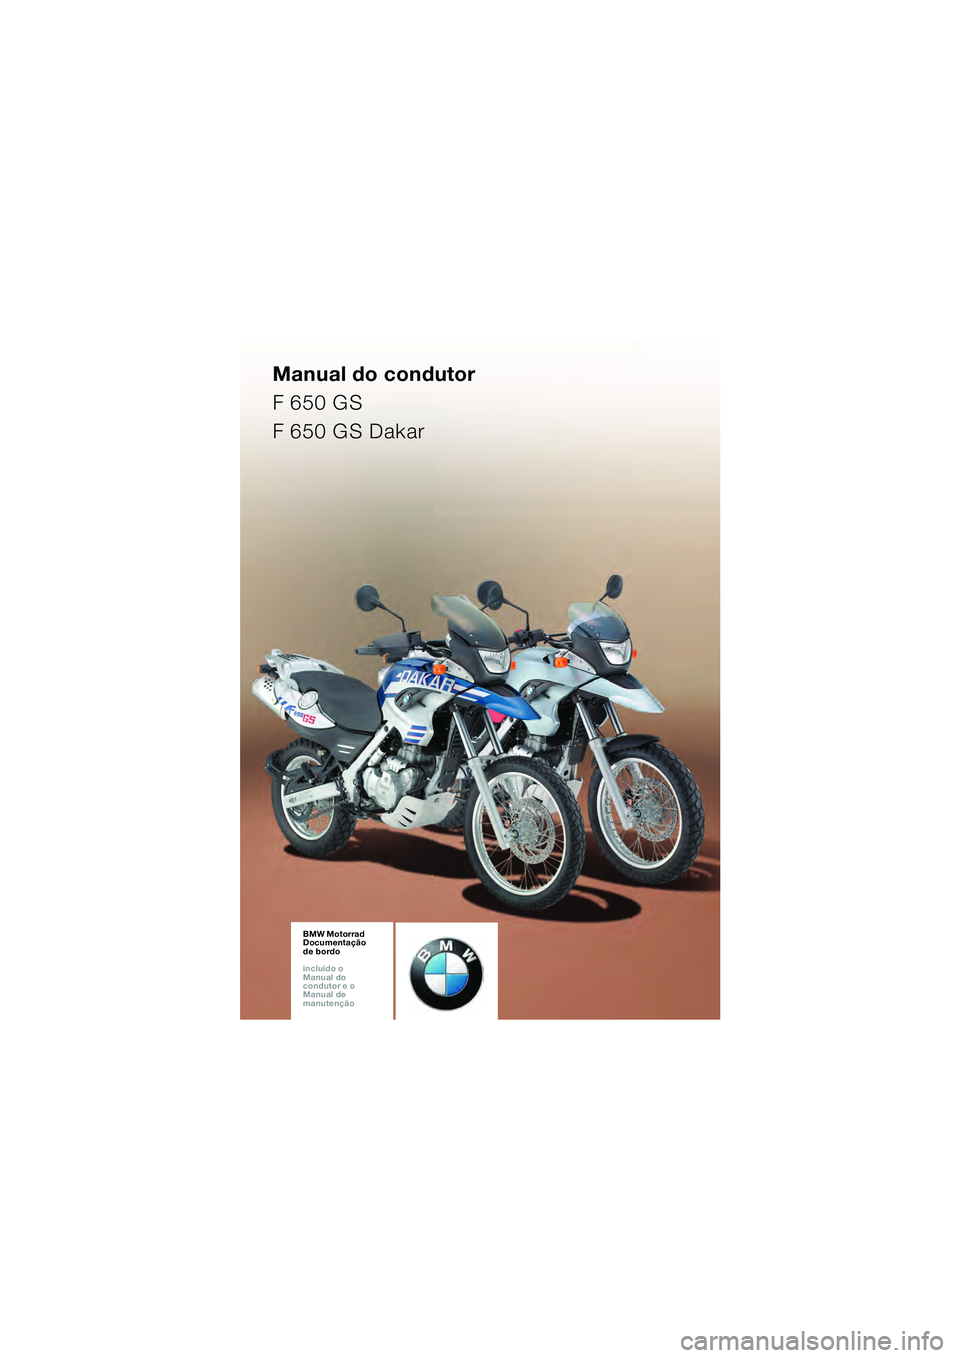 BMW MOTORRAD F 650 GS 2003  Manual do condutor (in Portuguese) Manual do condutor
F 650 GS
F 650 GS Dakar
BMW Motorrad
Documentação 
de bordo
incluido o  
Manual do  
Proprietário e o  
Instruções para  
a manutençãoBMW Motorrad
Documentação 
de bordo
in